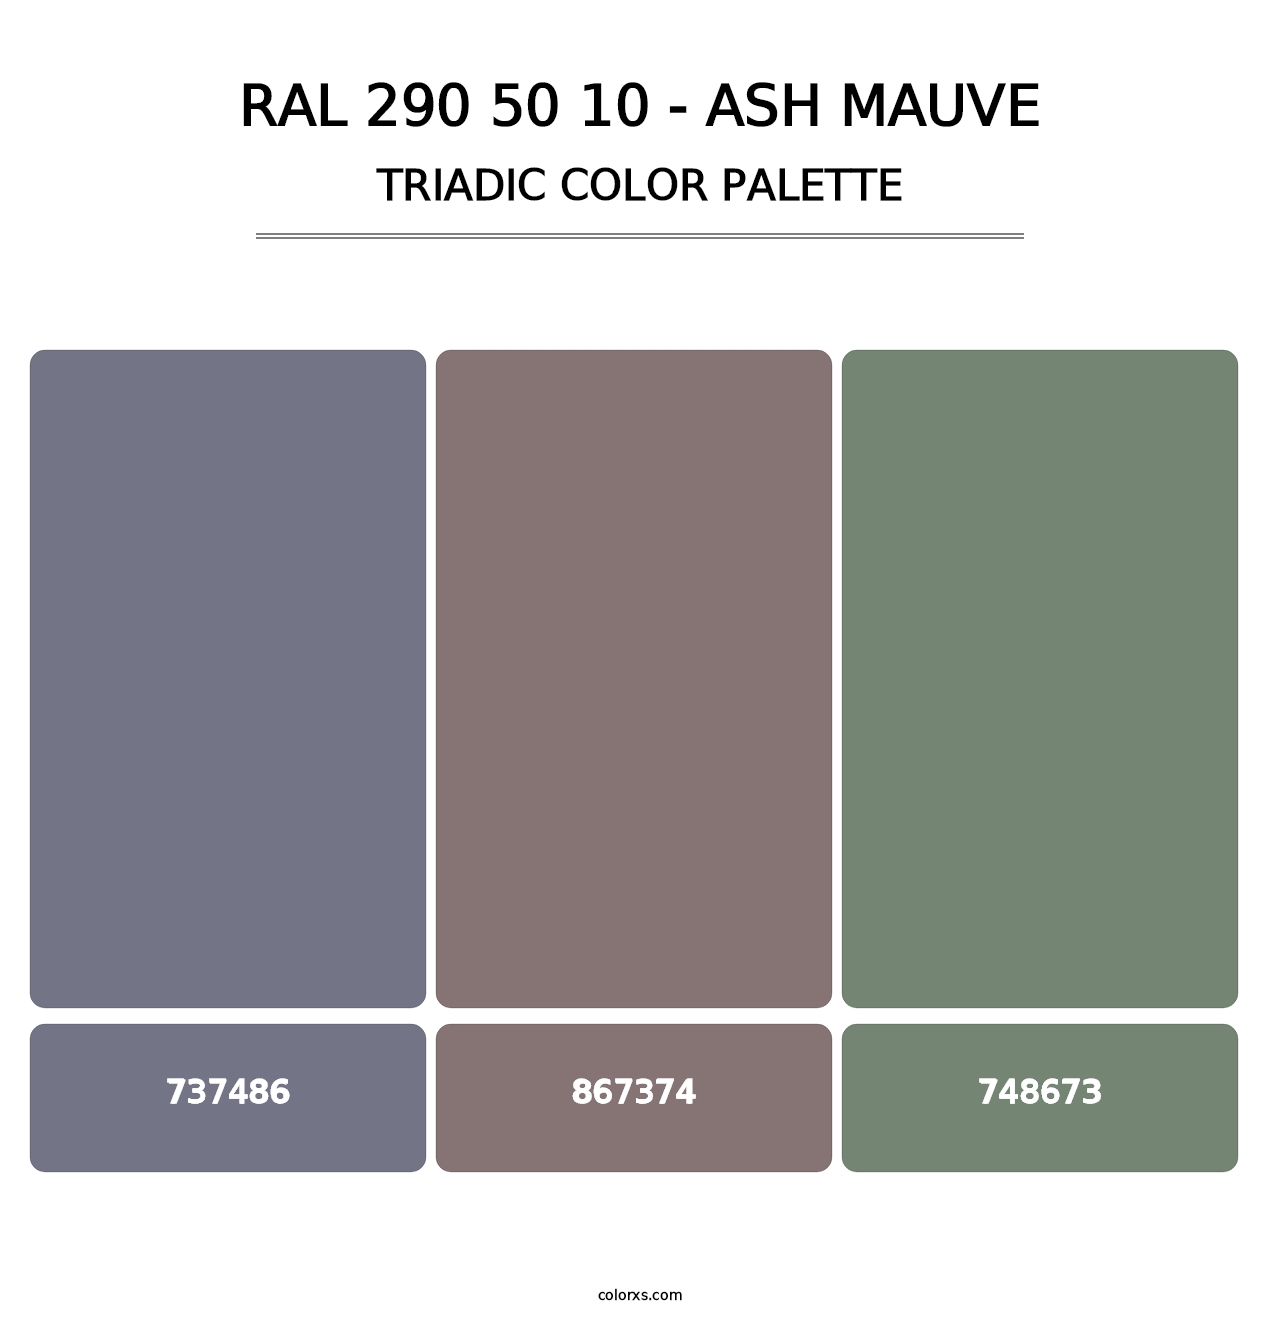 RAL 290 50 10 - Ash Mauve - Triadic Color Palette